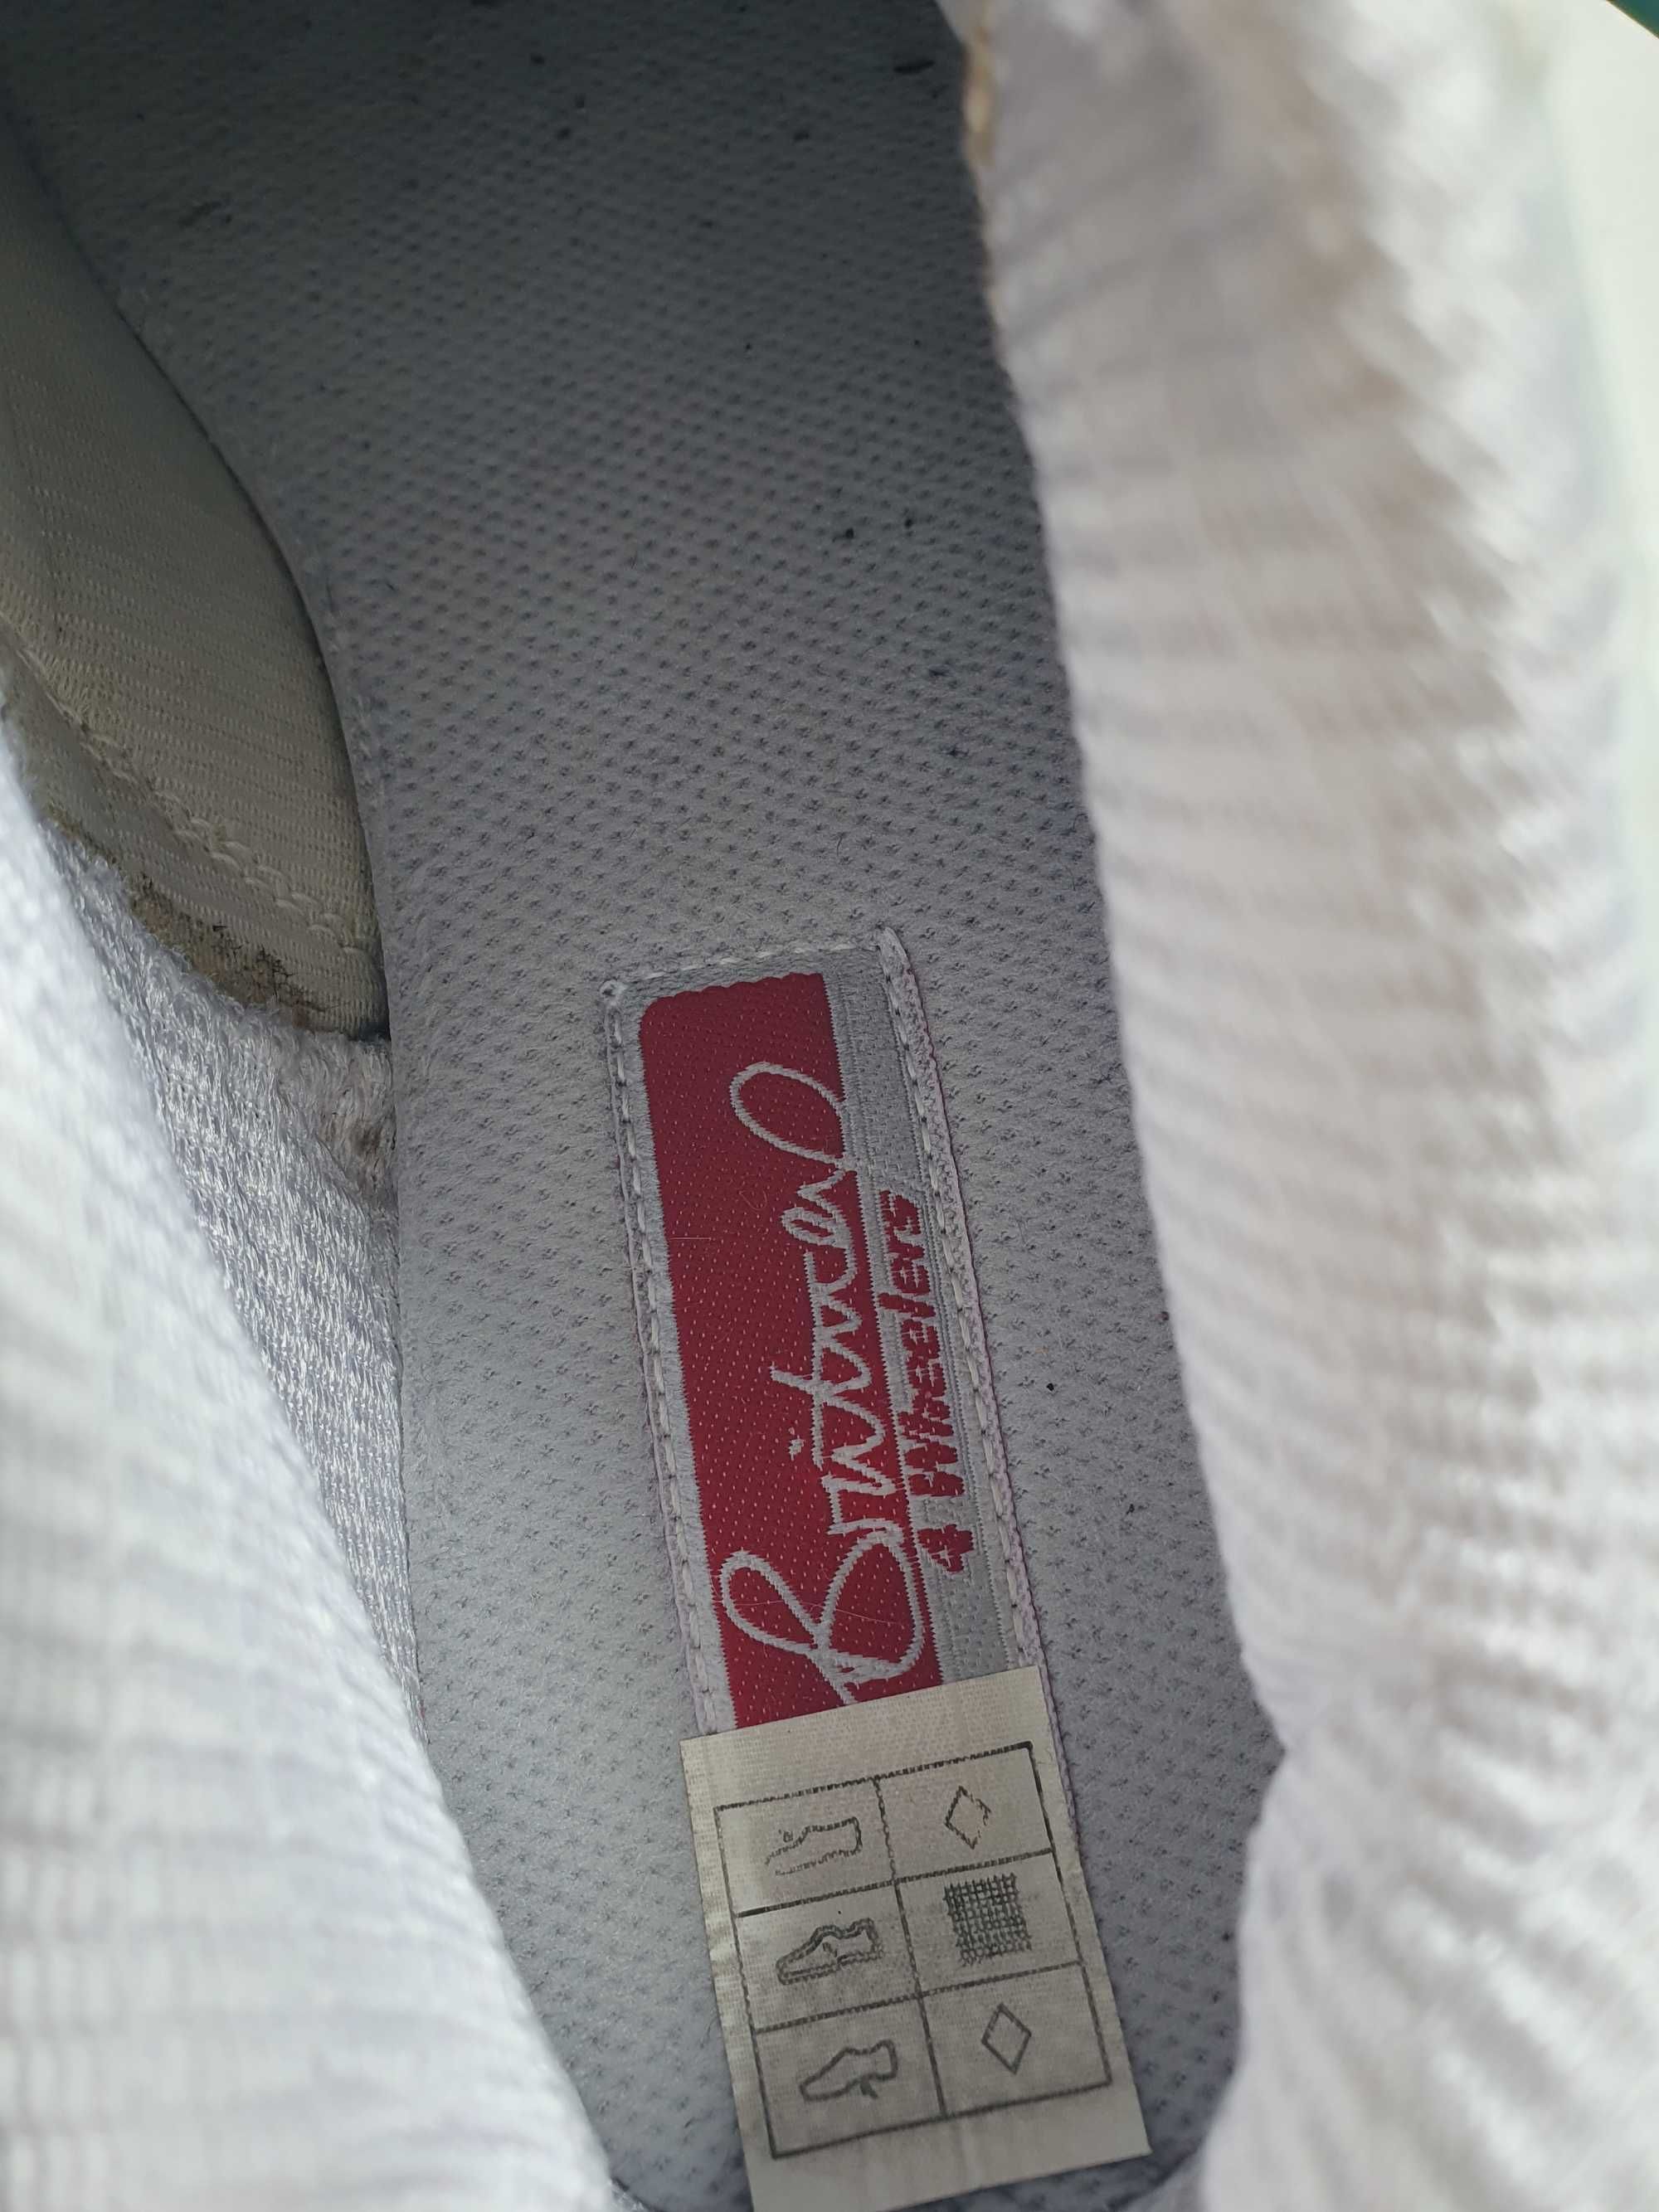 Ролкови кънки N41 - Skechers Britney Spears + протектори L + сак